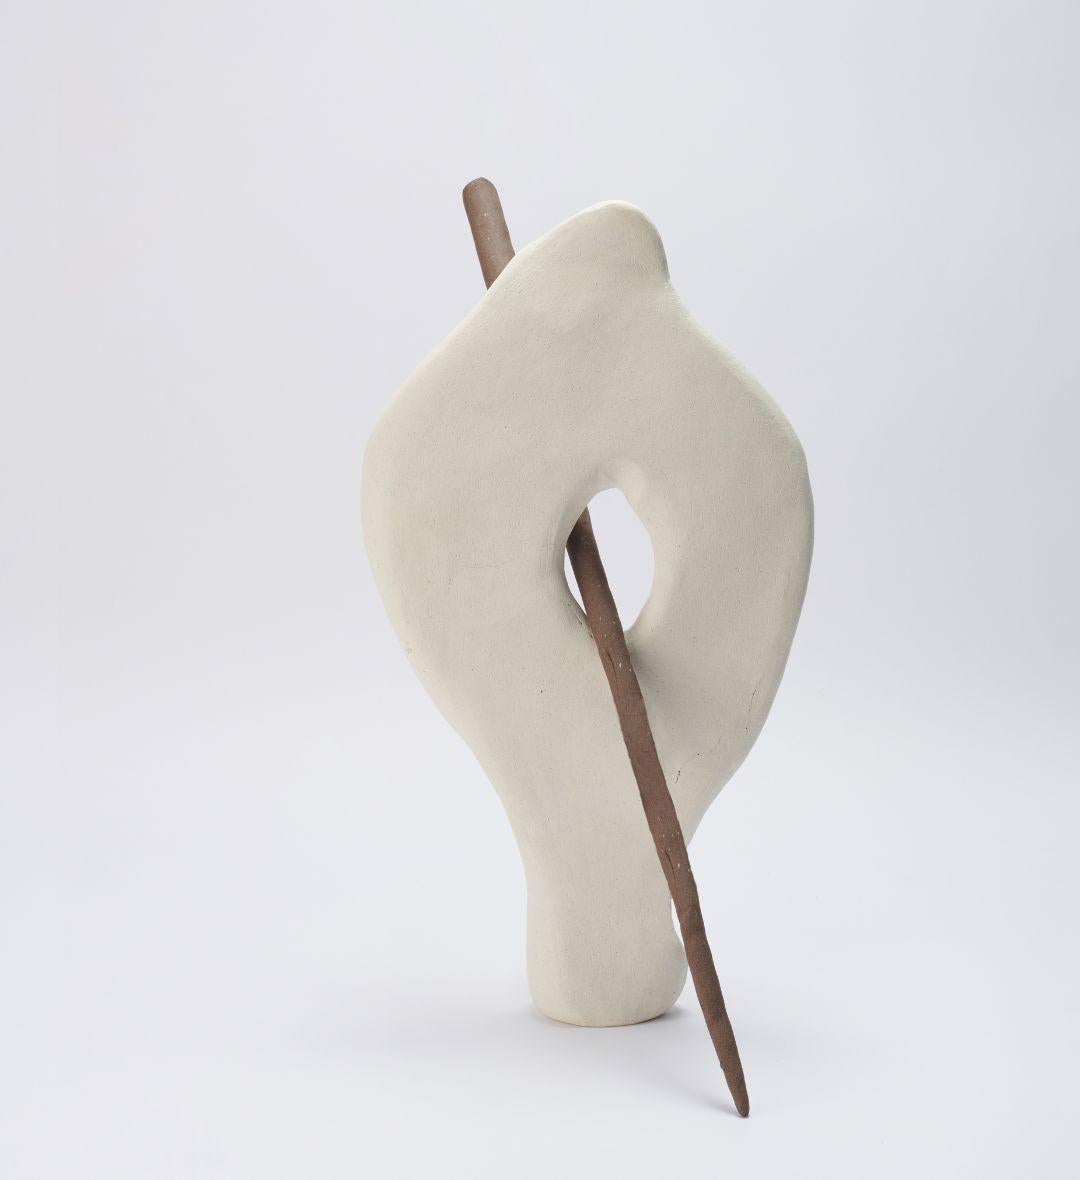 Balance 02, Skulptur von Joana Kieppe
Einzigartiges Stück.
Abmessungen: T 4 x B 25 x H 50 cm.
MATERIALIEN: Elfenbein und Lotus-Hochtemperatur-Ton.

Alle Stücke werden aus hochwertigem brasilianischem Wildton hergestellt, die Hochtemperaturstücke